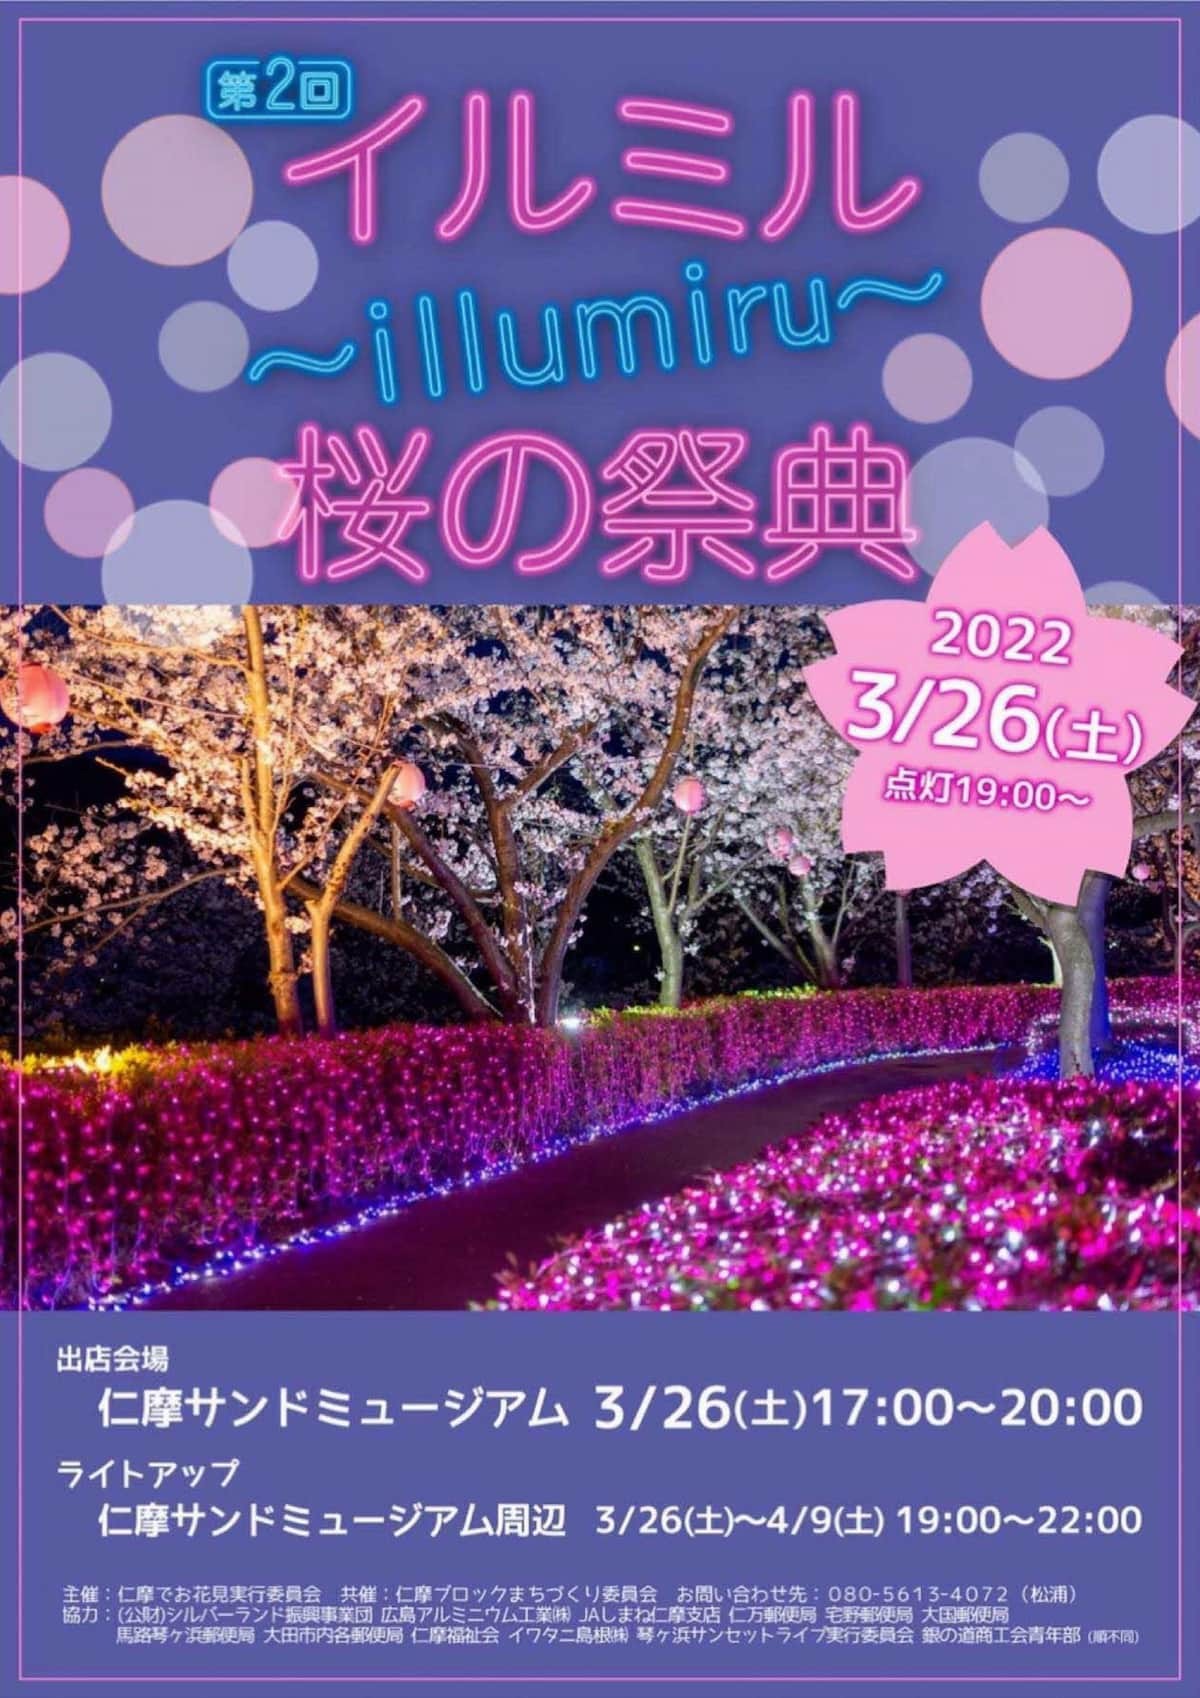 島根県大田市の観光スポット『仁摩サンドミュージアム』で開催中のイベント「イルミル」のイベント情報